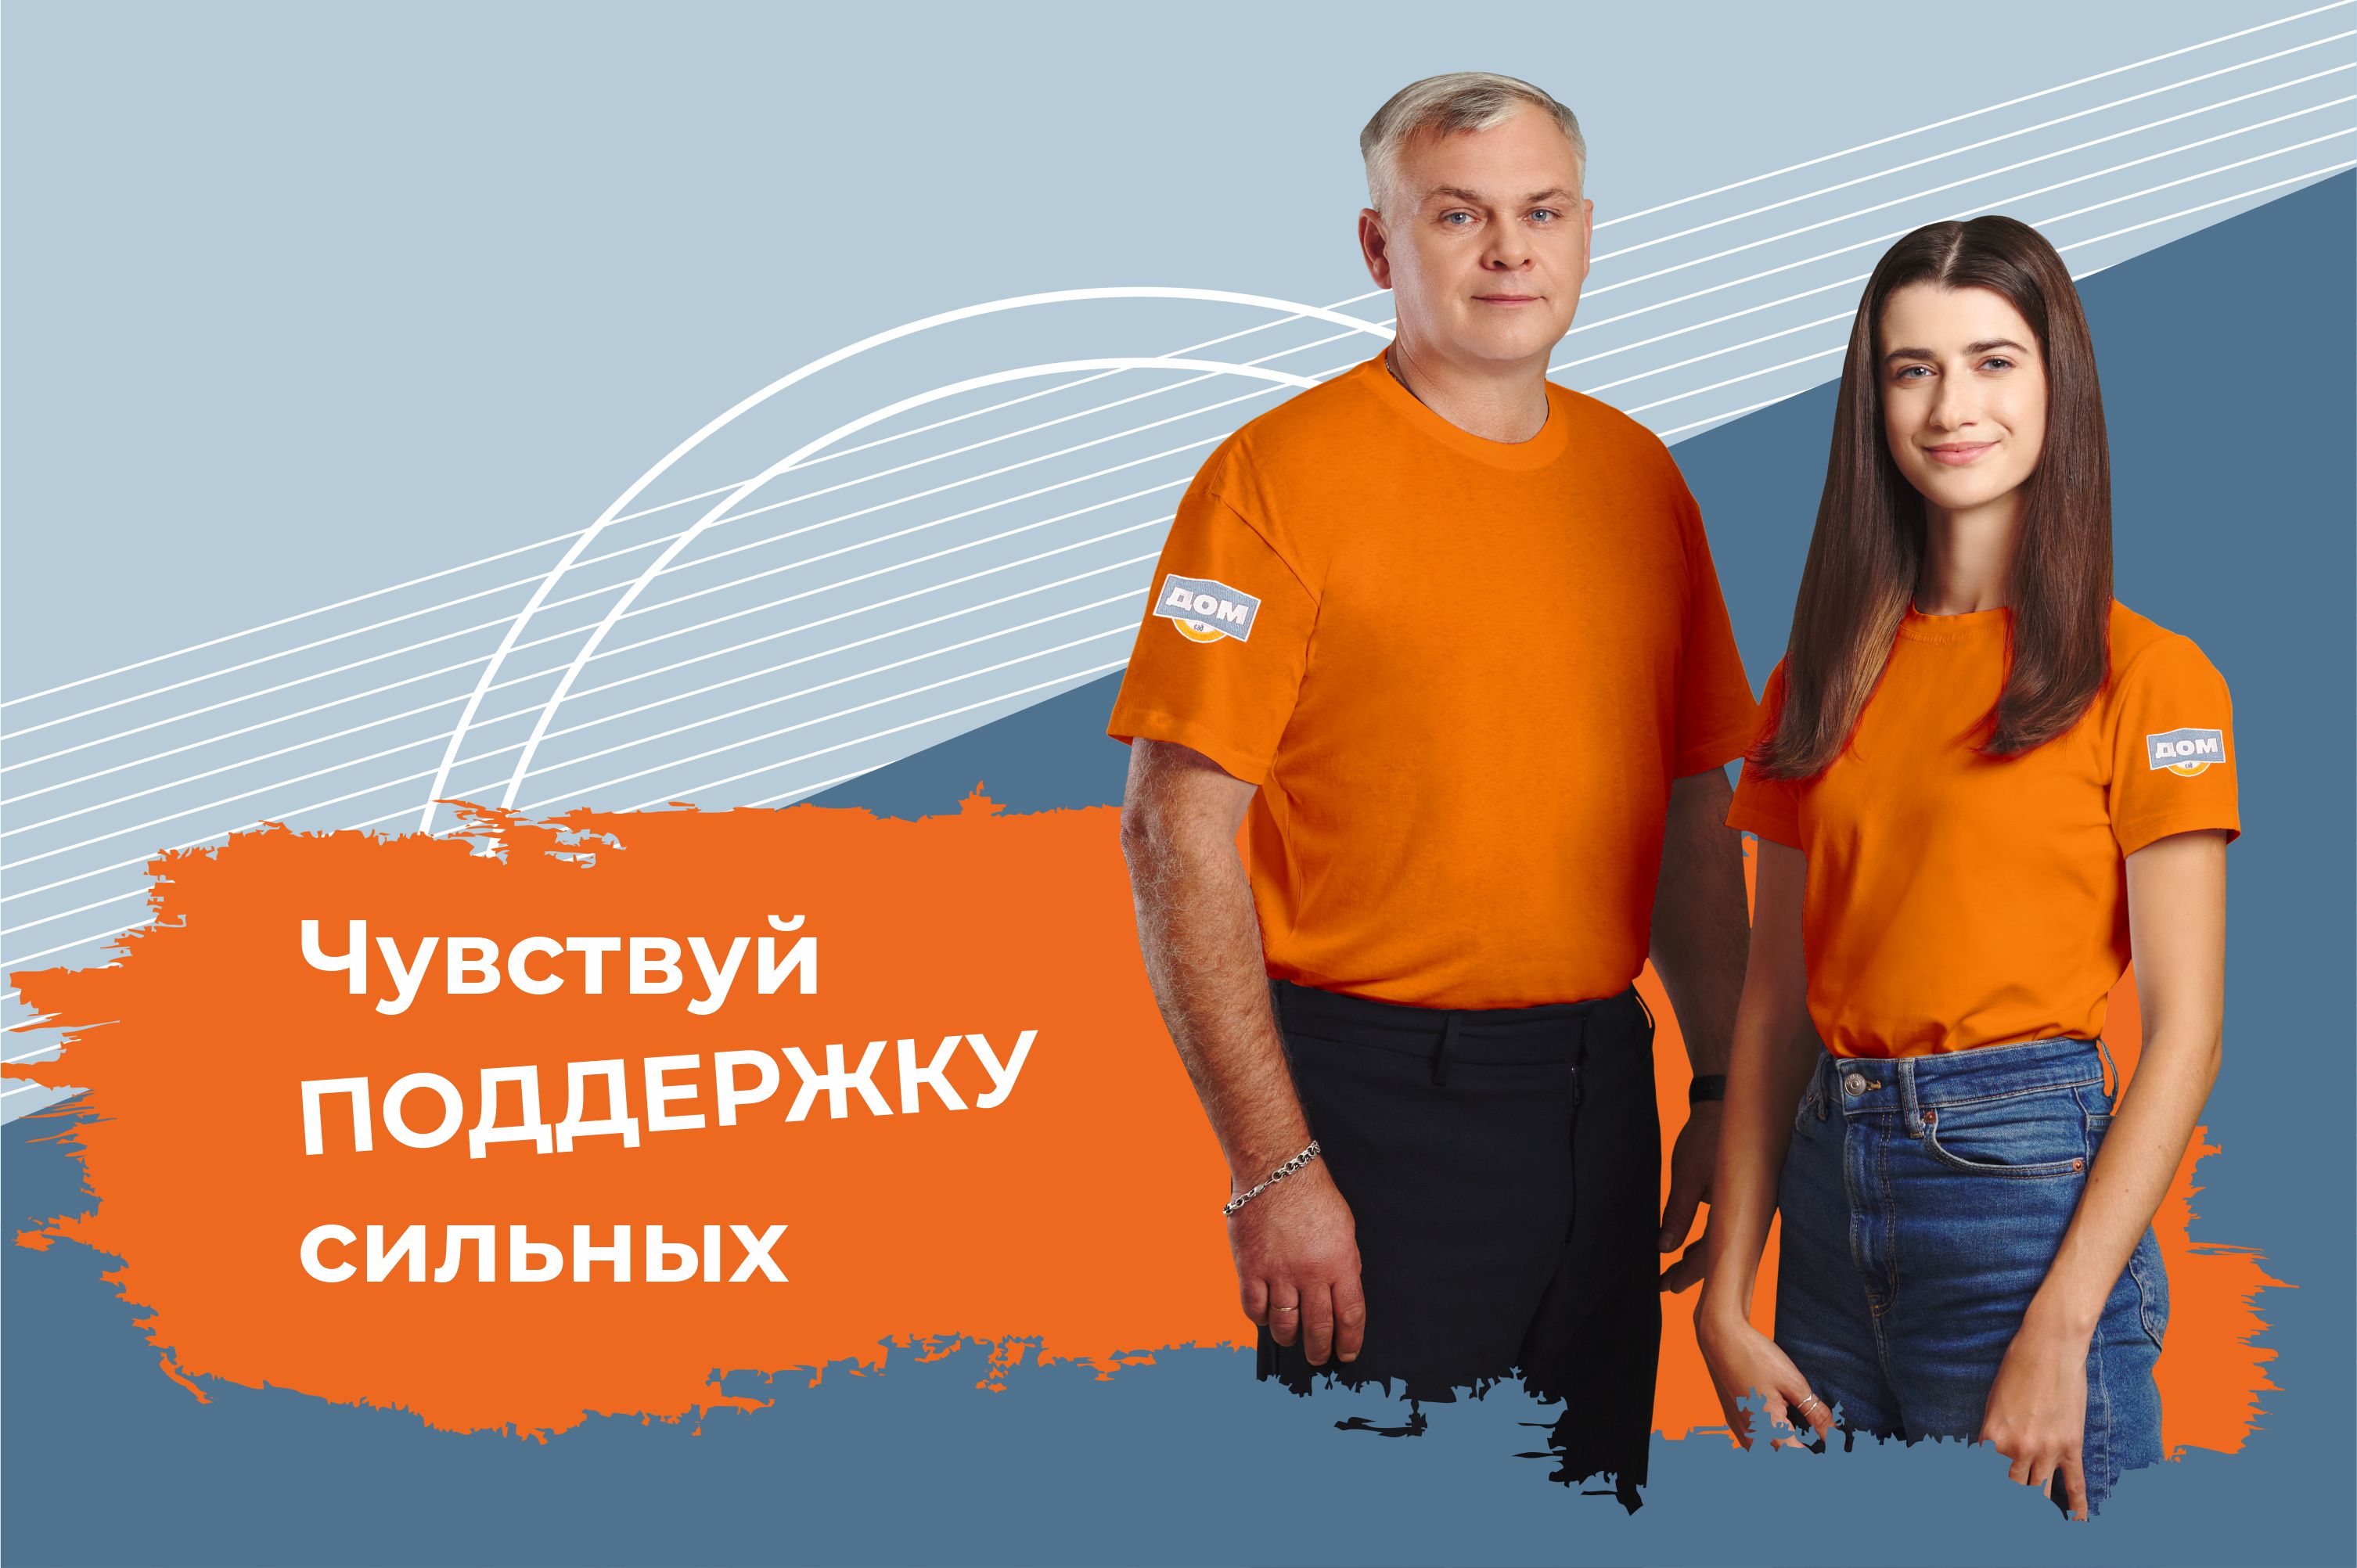 Работа в Челябинске по рубрикам